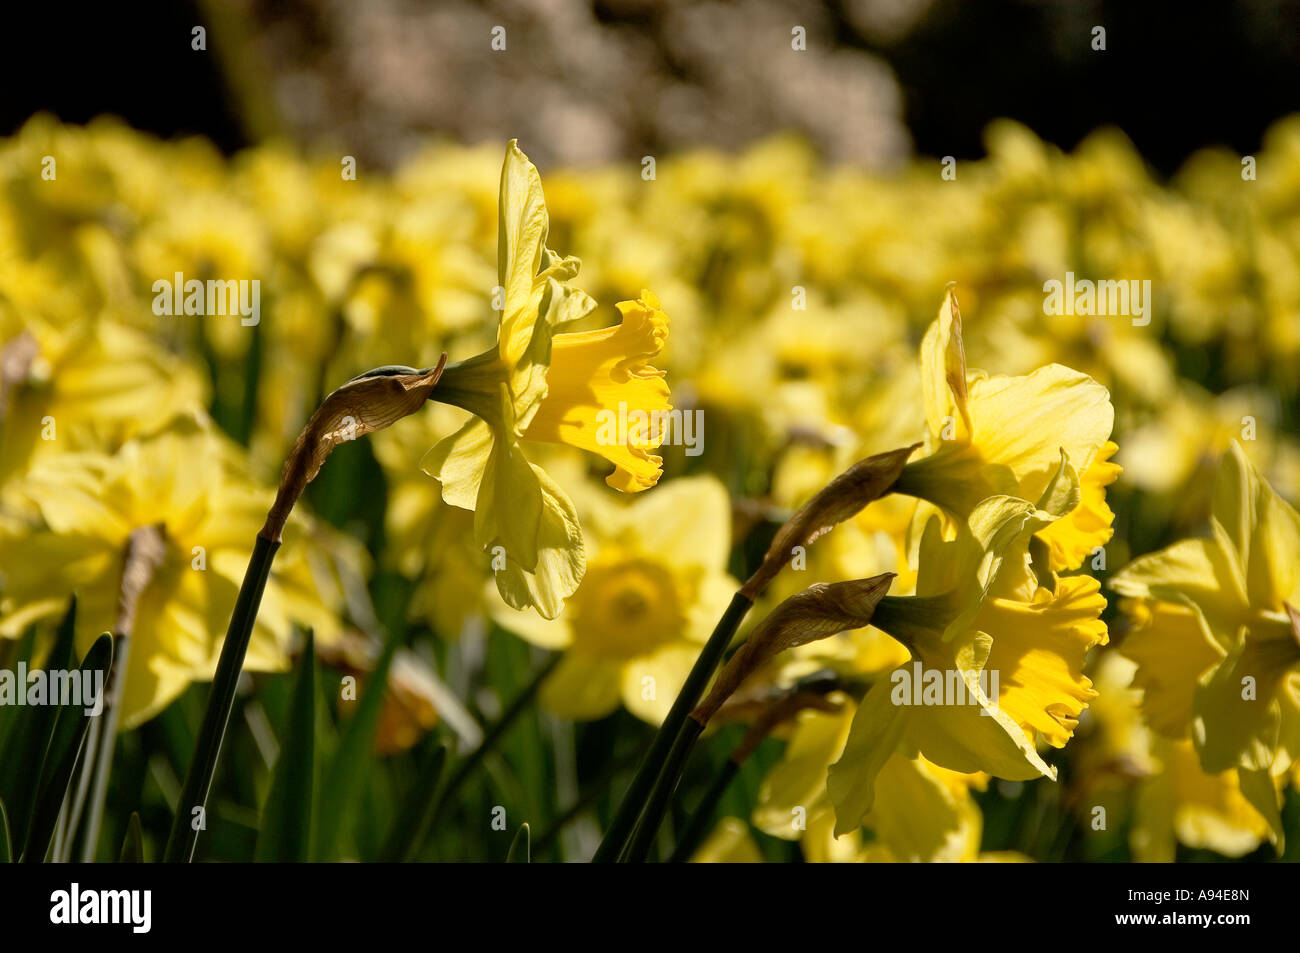 Gros plan des fleurs jaunes jonquilles narcissi floraison en croissance au printemps Angleterre Royaume-Uni Grande-Bretagne Banque D'Images